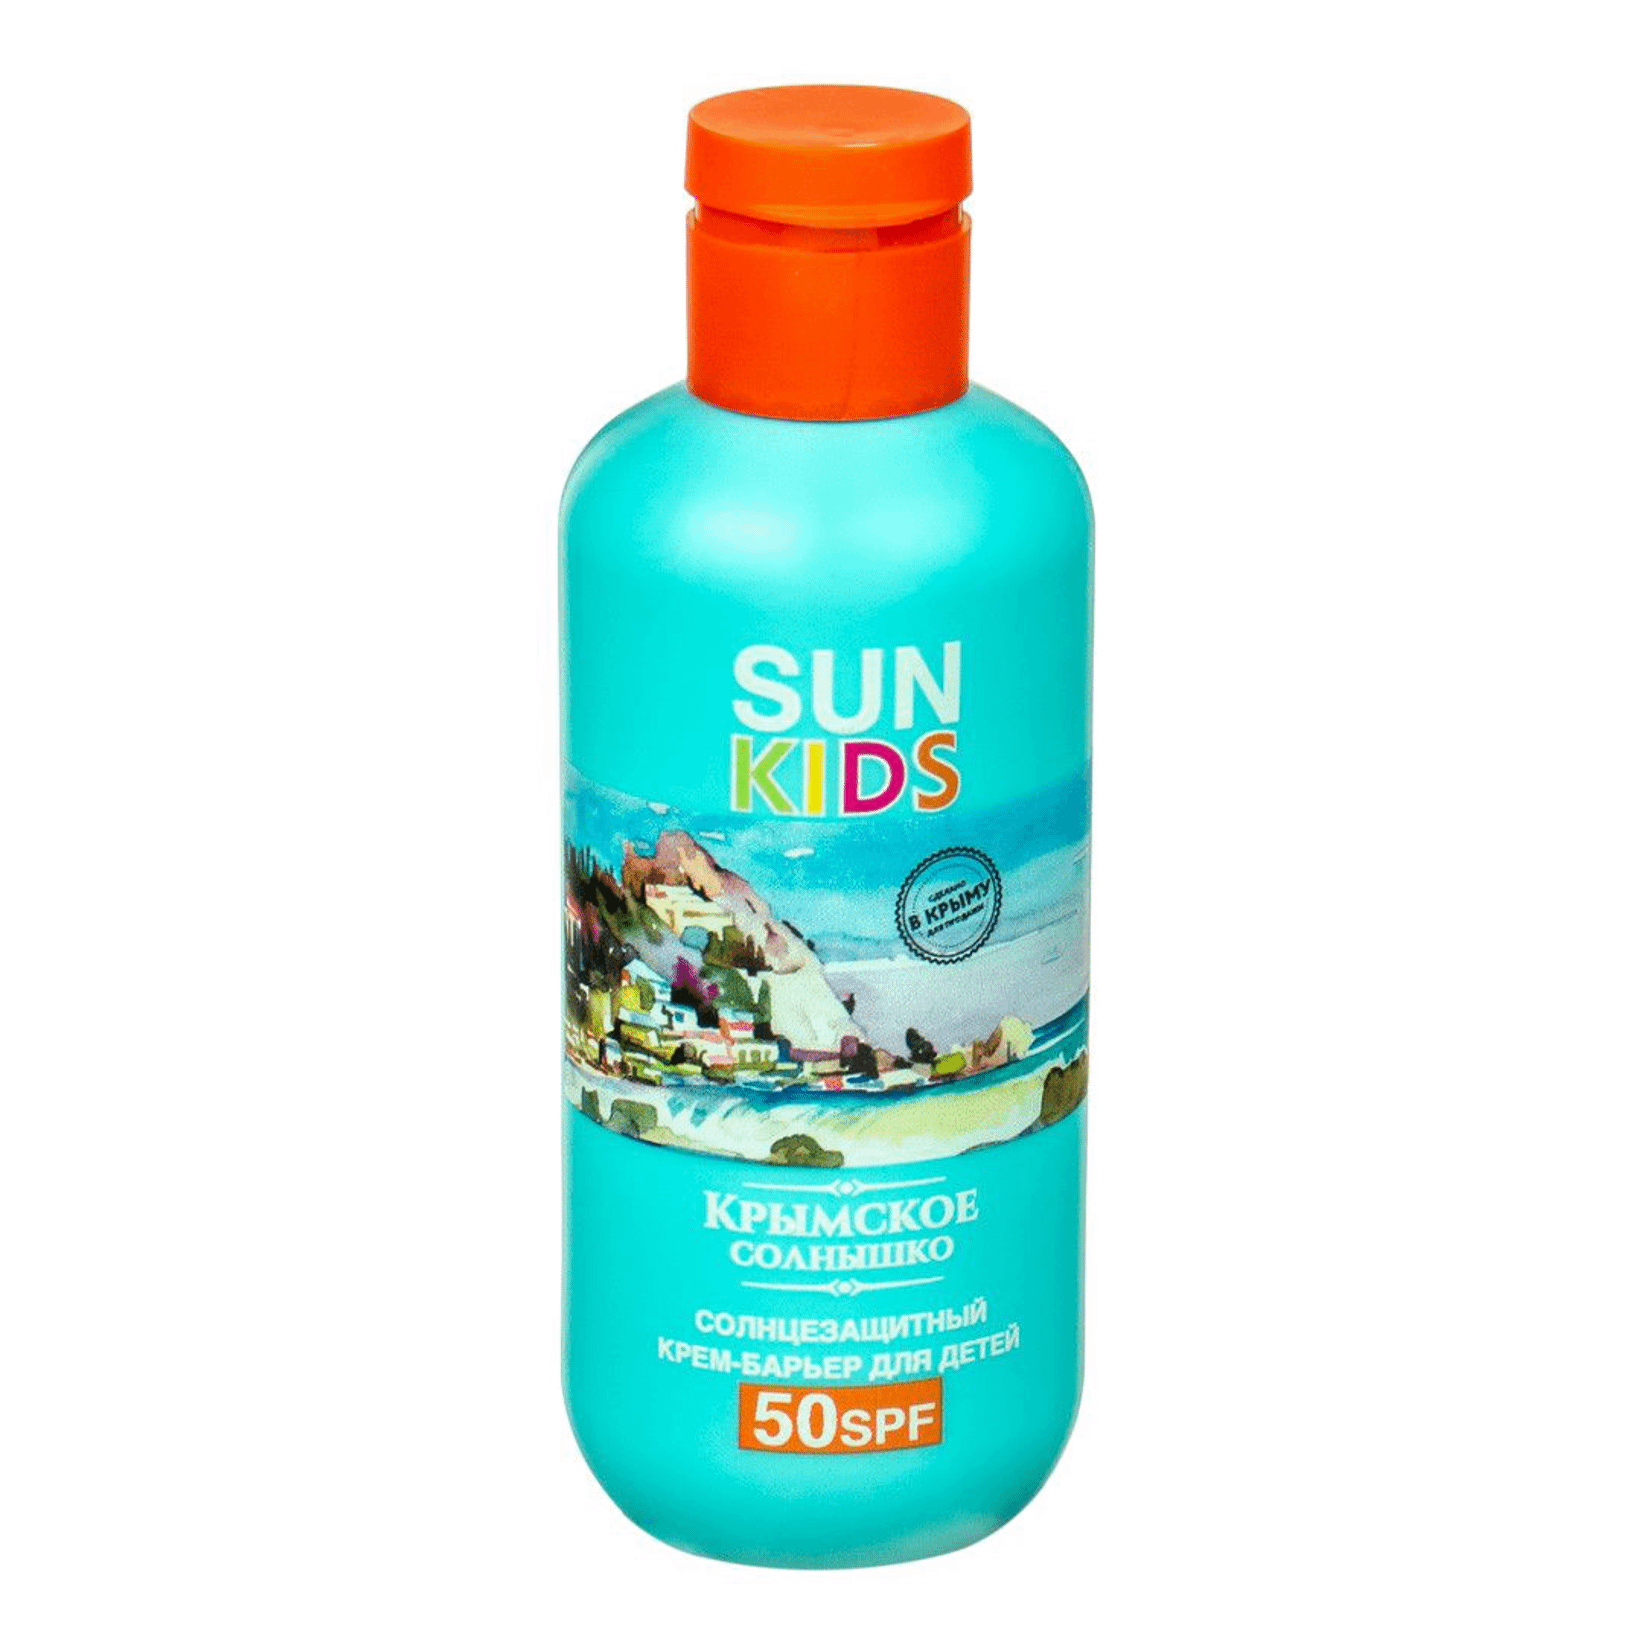 Солнцезащитный крем Крымская Ривьера Sun Kids для лица и тела 50 SPF 200 мл успокаивающий солнцезащитный крем с экстрактом центеллы азиатской